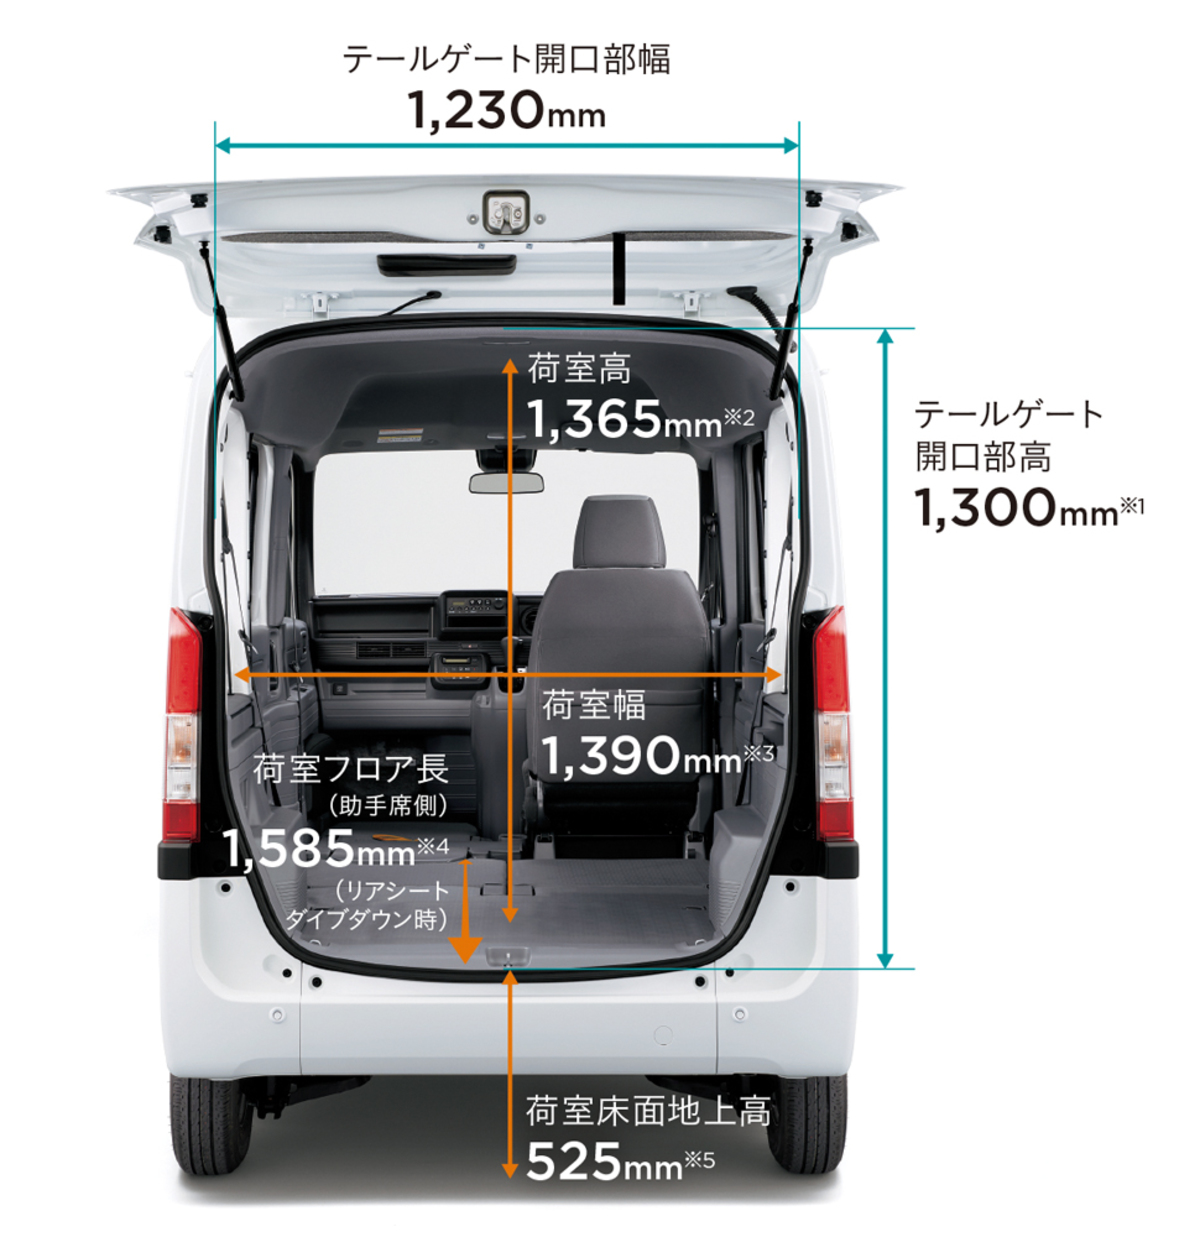 新型軽 ホンダn Van は3タイプのデザインで登場 ニュース Webcg